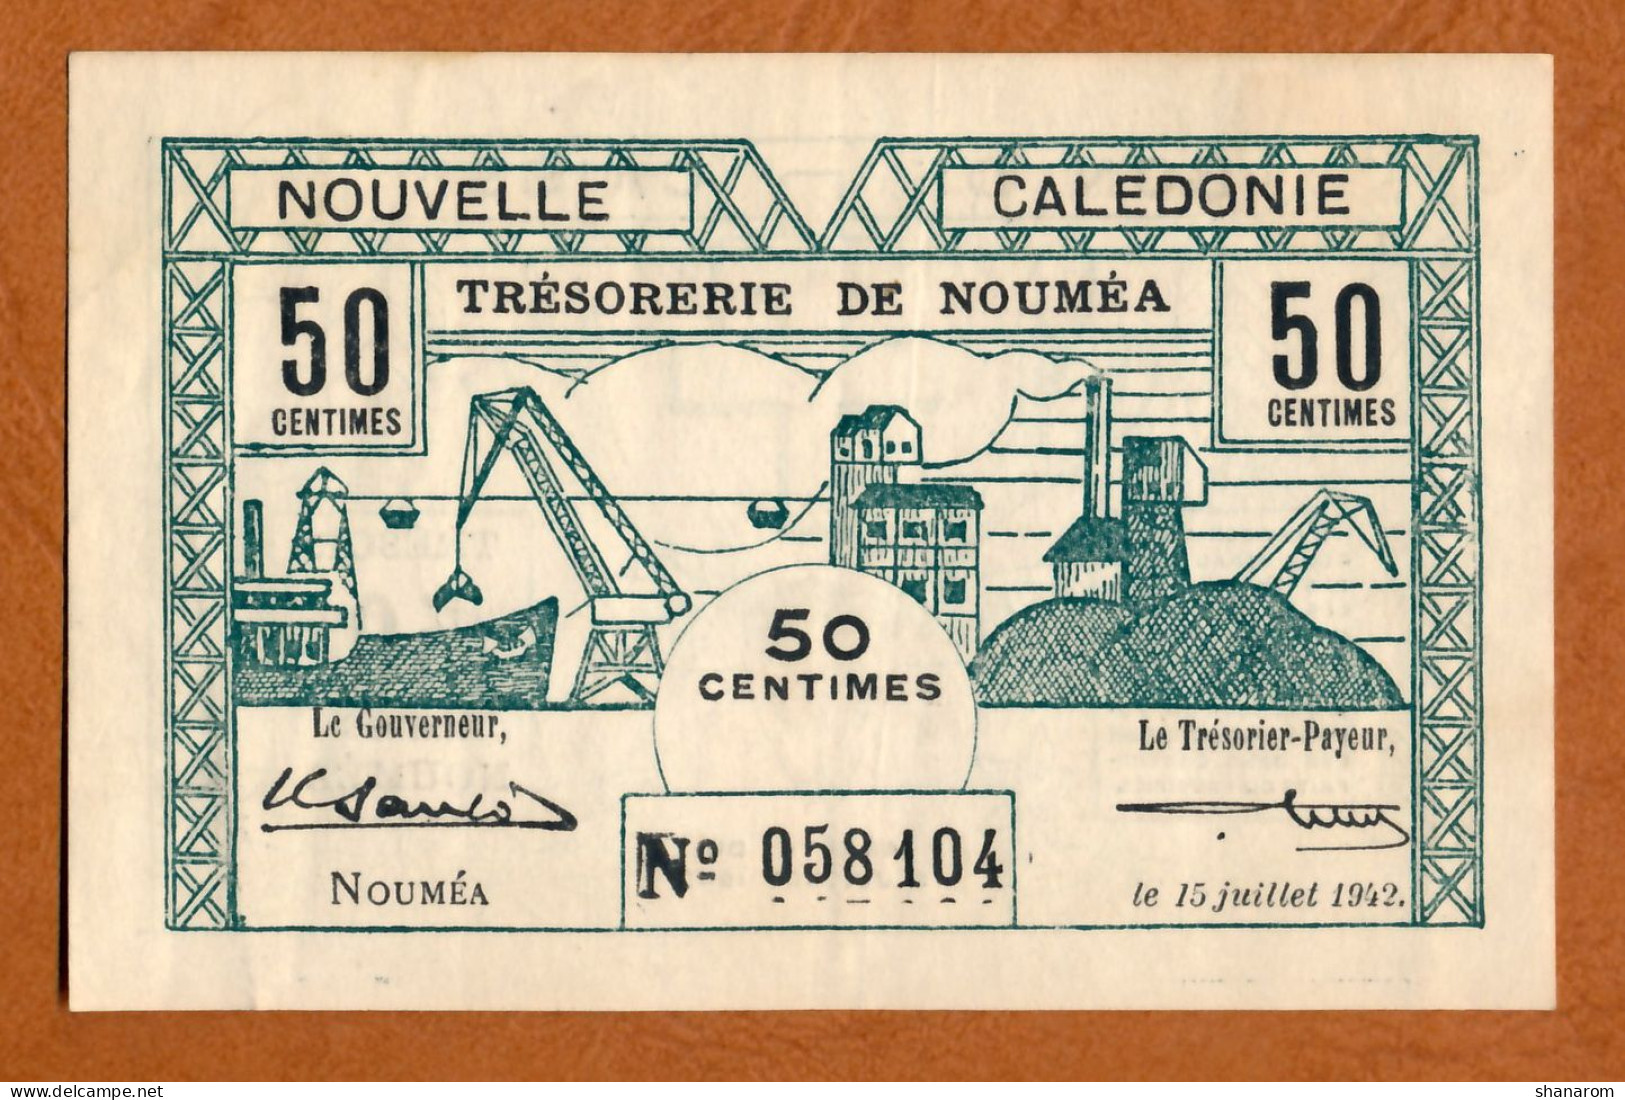 1942 // NOUVELLE CALEDONIE // TRESORERIE DE NOUMEA // JUILLET 1942 // Cinquante Centimes // VF-TTB - Nouméa (New Caledonia 1873-1985)